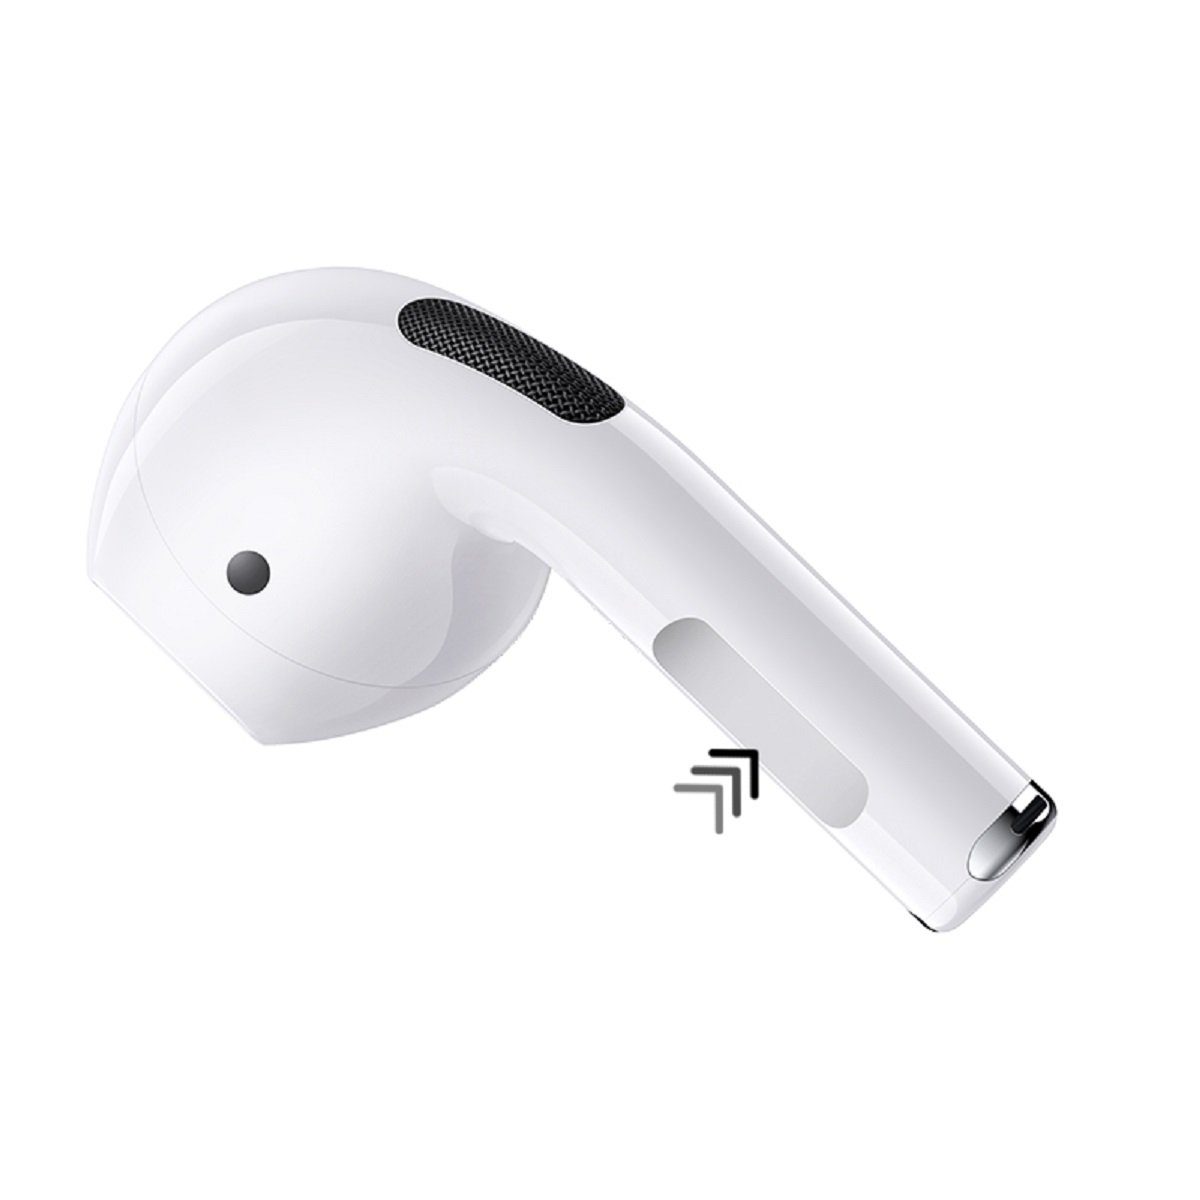 Bluetooth-Kopfhörer wasserdicht, Schwarz 5.0 bluetooth, Remax Smartphone Geräuschunterdrückung) True Wireless (bluetooth, Kopfhörer für mit TWS-10i True Wireless, Ladecase (Weiß) Aktive